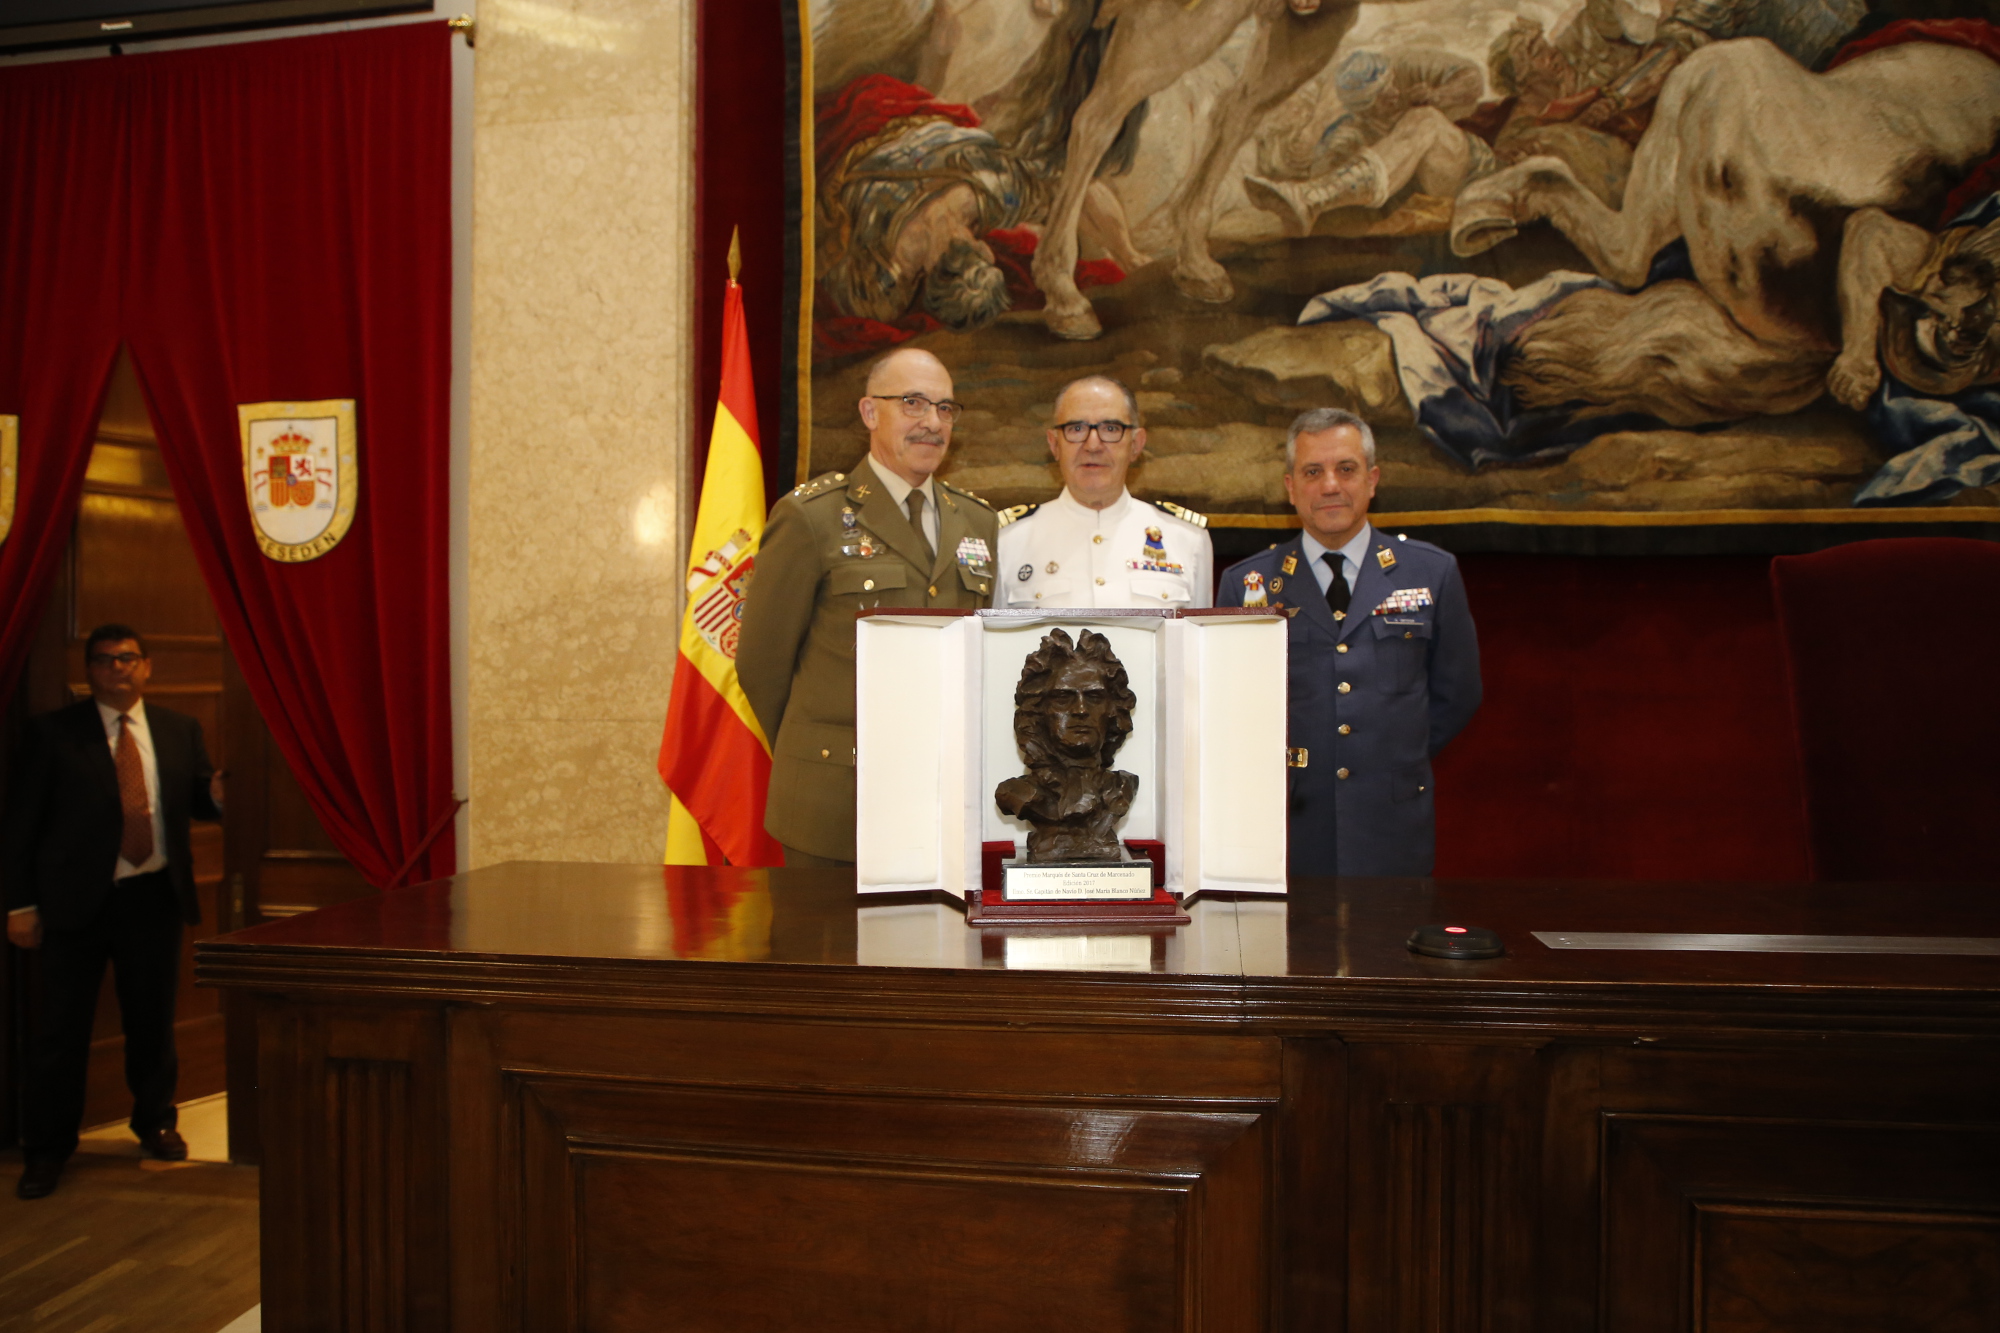 El JEMAD entrega el premio «Marqués de Santa Cruz de Marcenado 2017» al capitán de navío José María Blanco Núñez